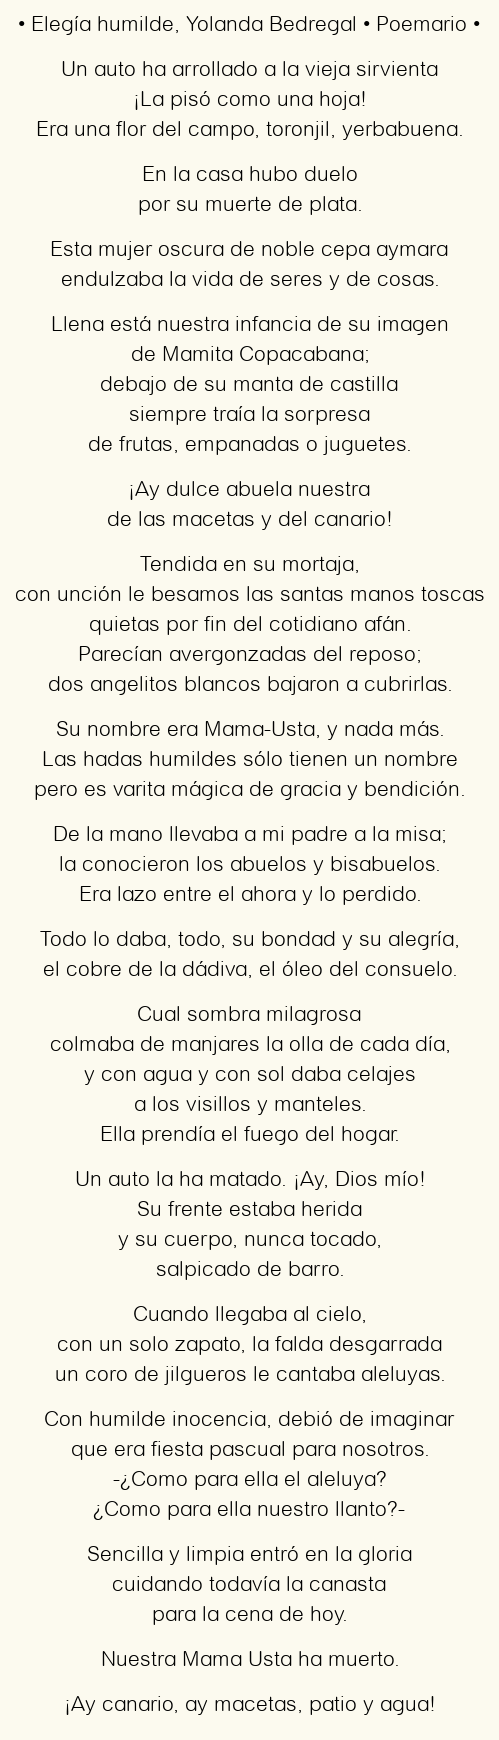 Imagen con el poema Elegía humilde, por Yolanda Bedregal